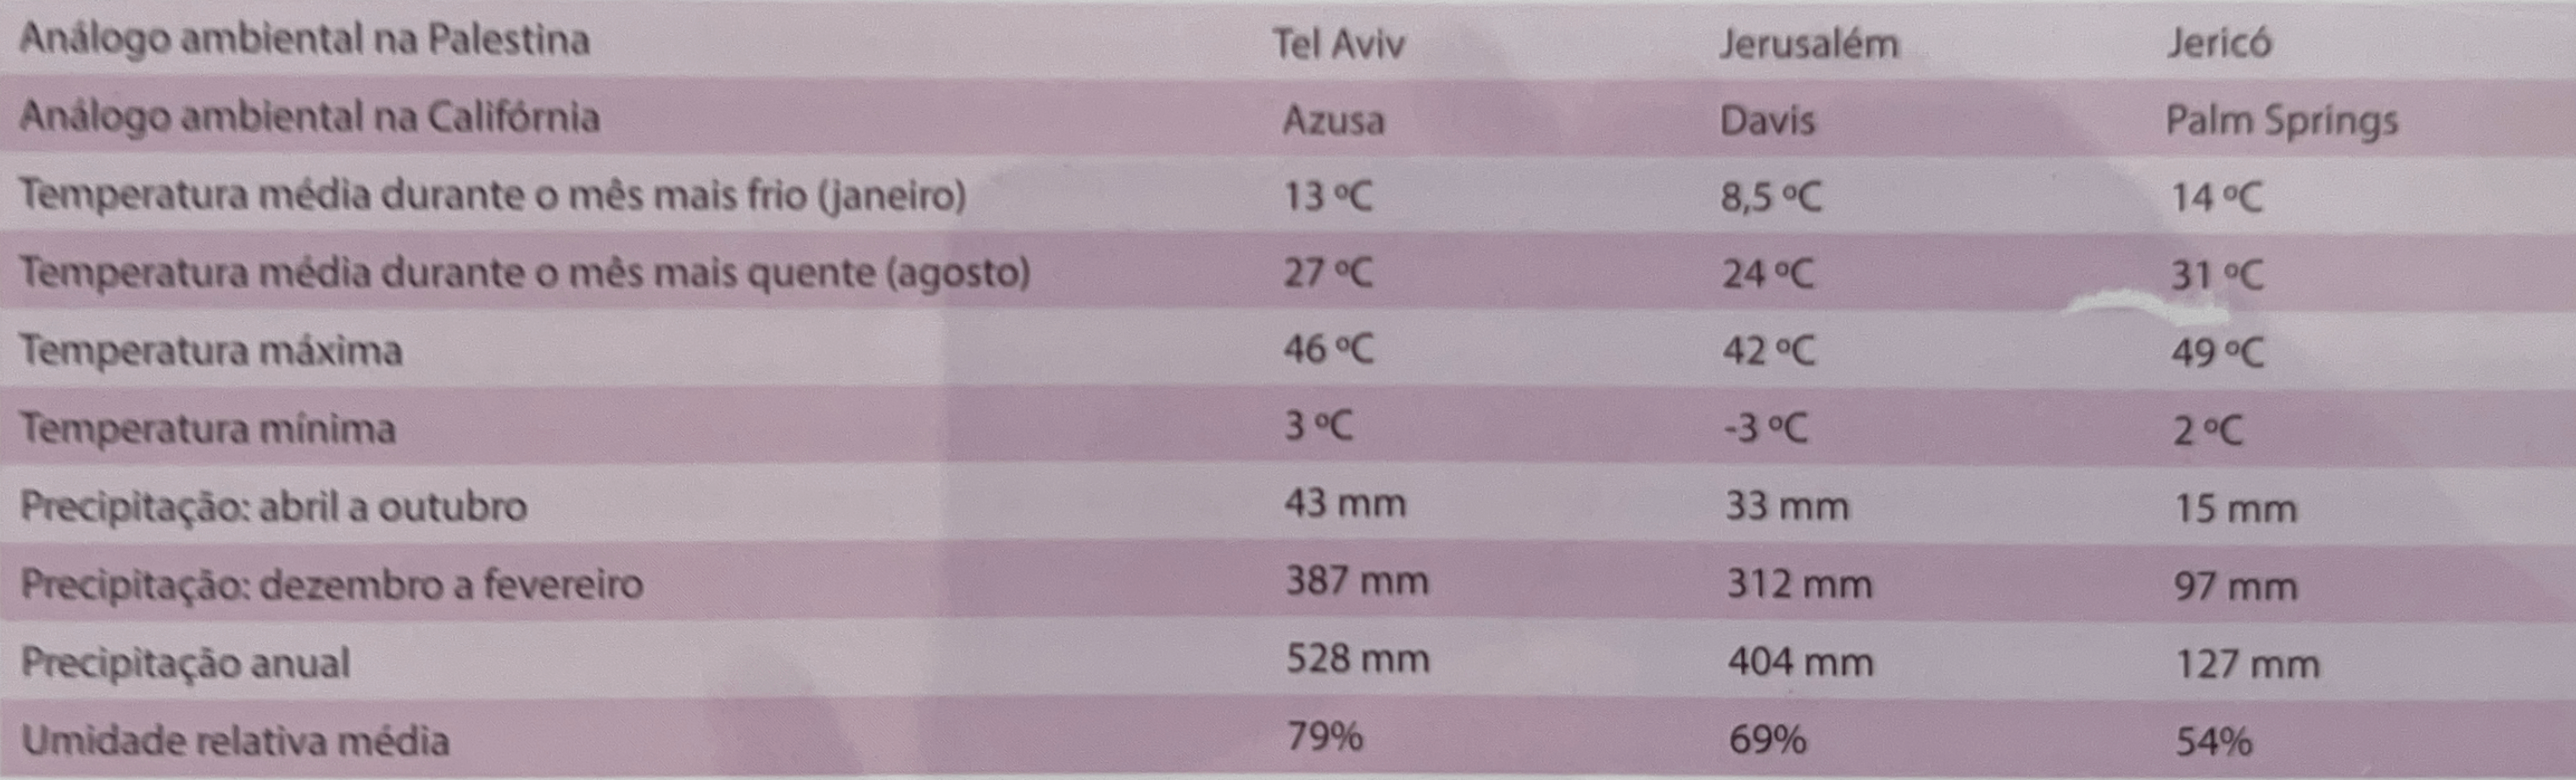 Tabela do clima da Palestina